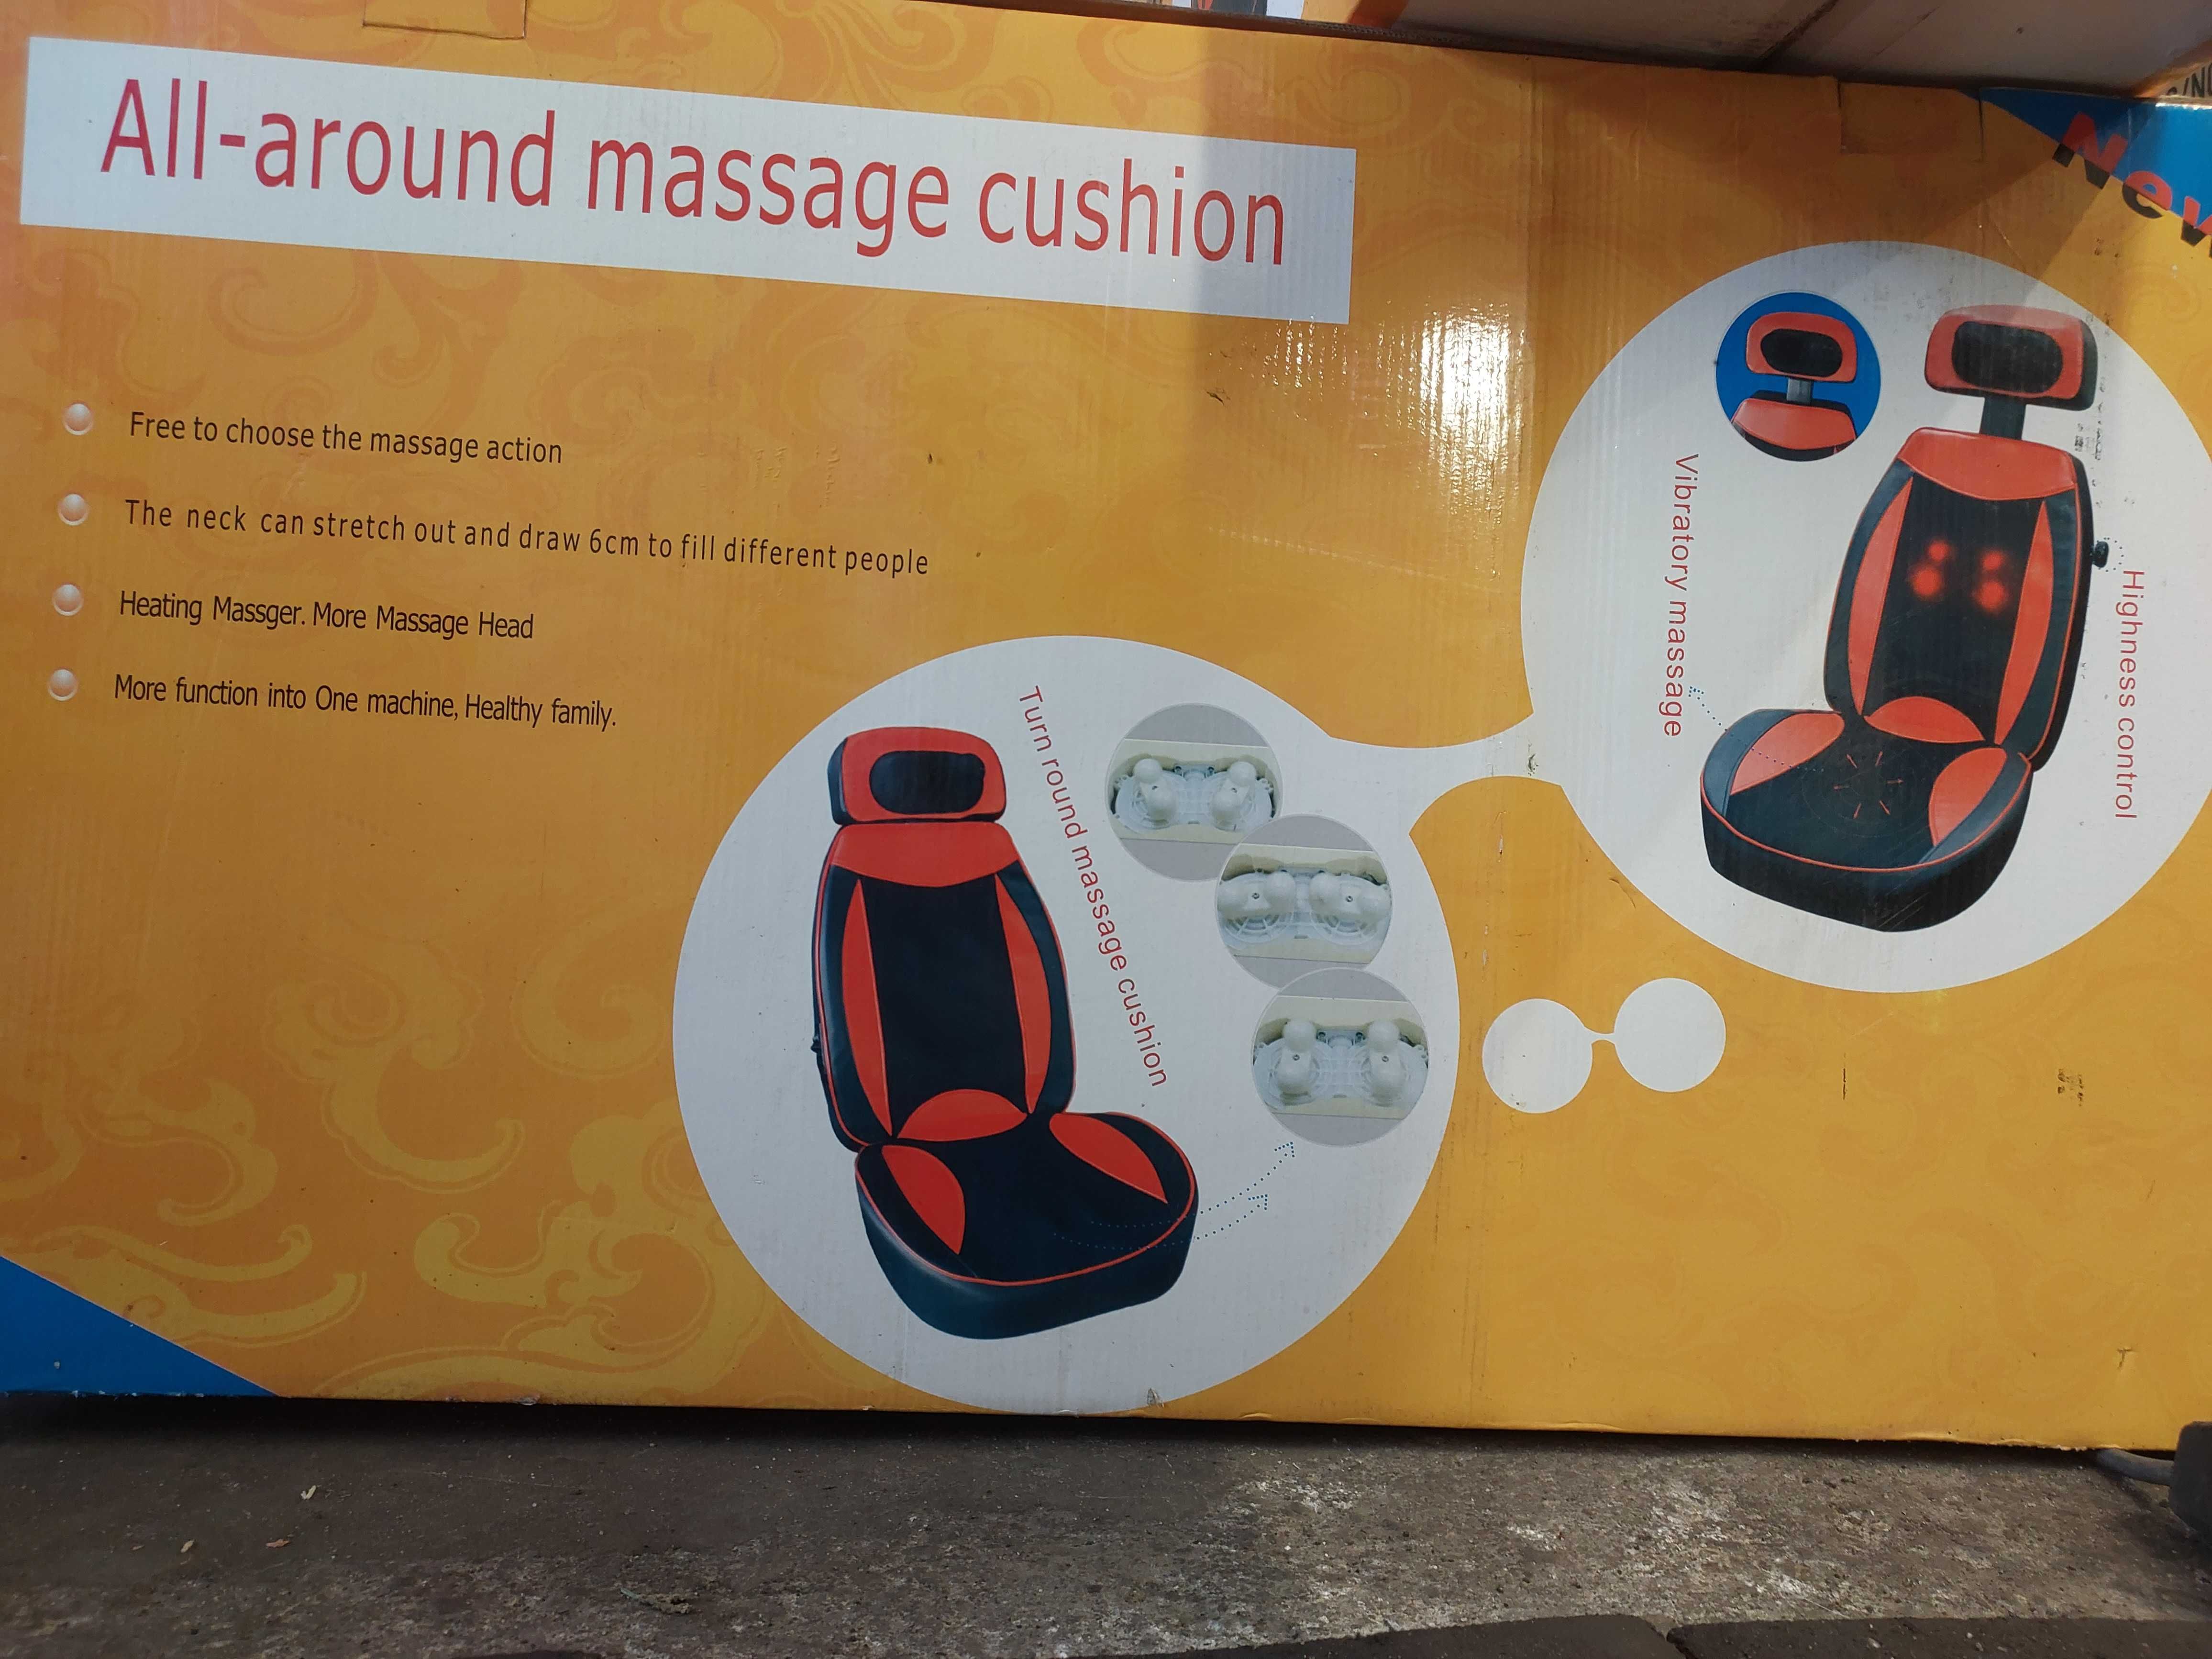 Poduszka Masująca / All-around massage cushion